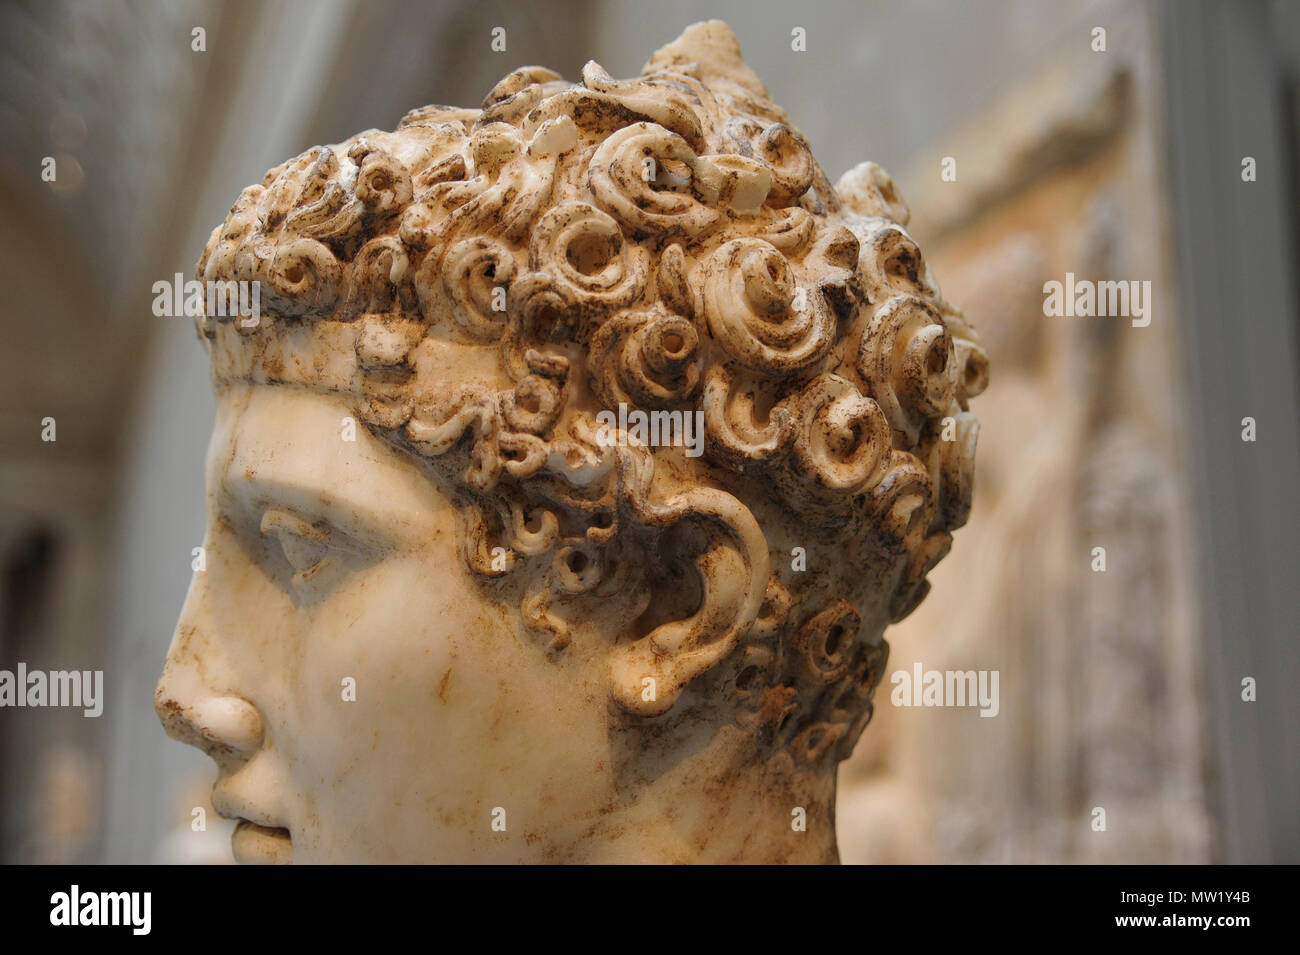 En tête d'un athlète, vue de profil, copie romaine après un bronze grec (ca. 138-192 CE), au MET, New York, NY, USA Banque D'Images